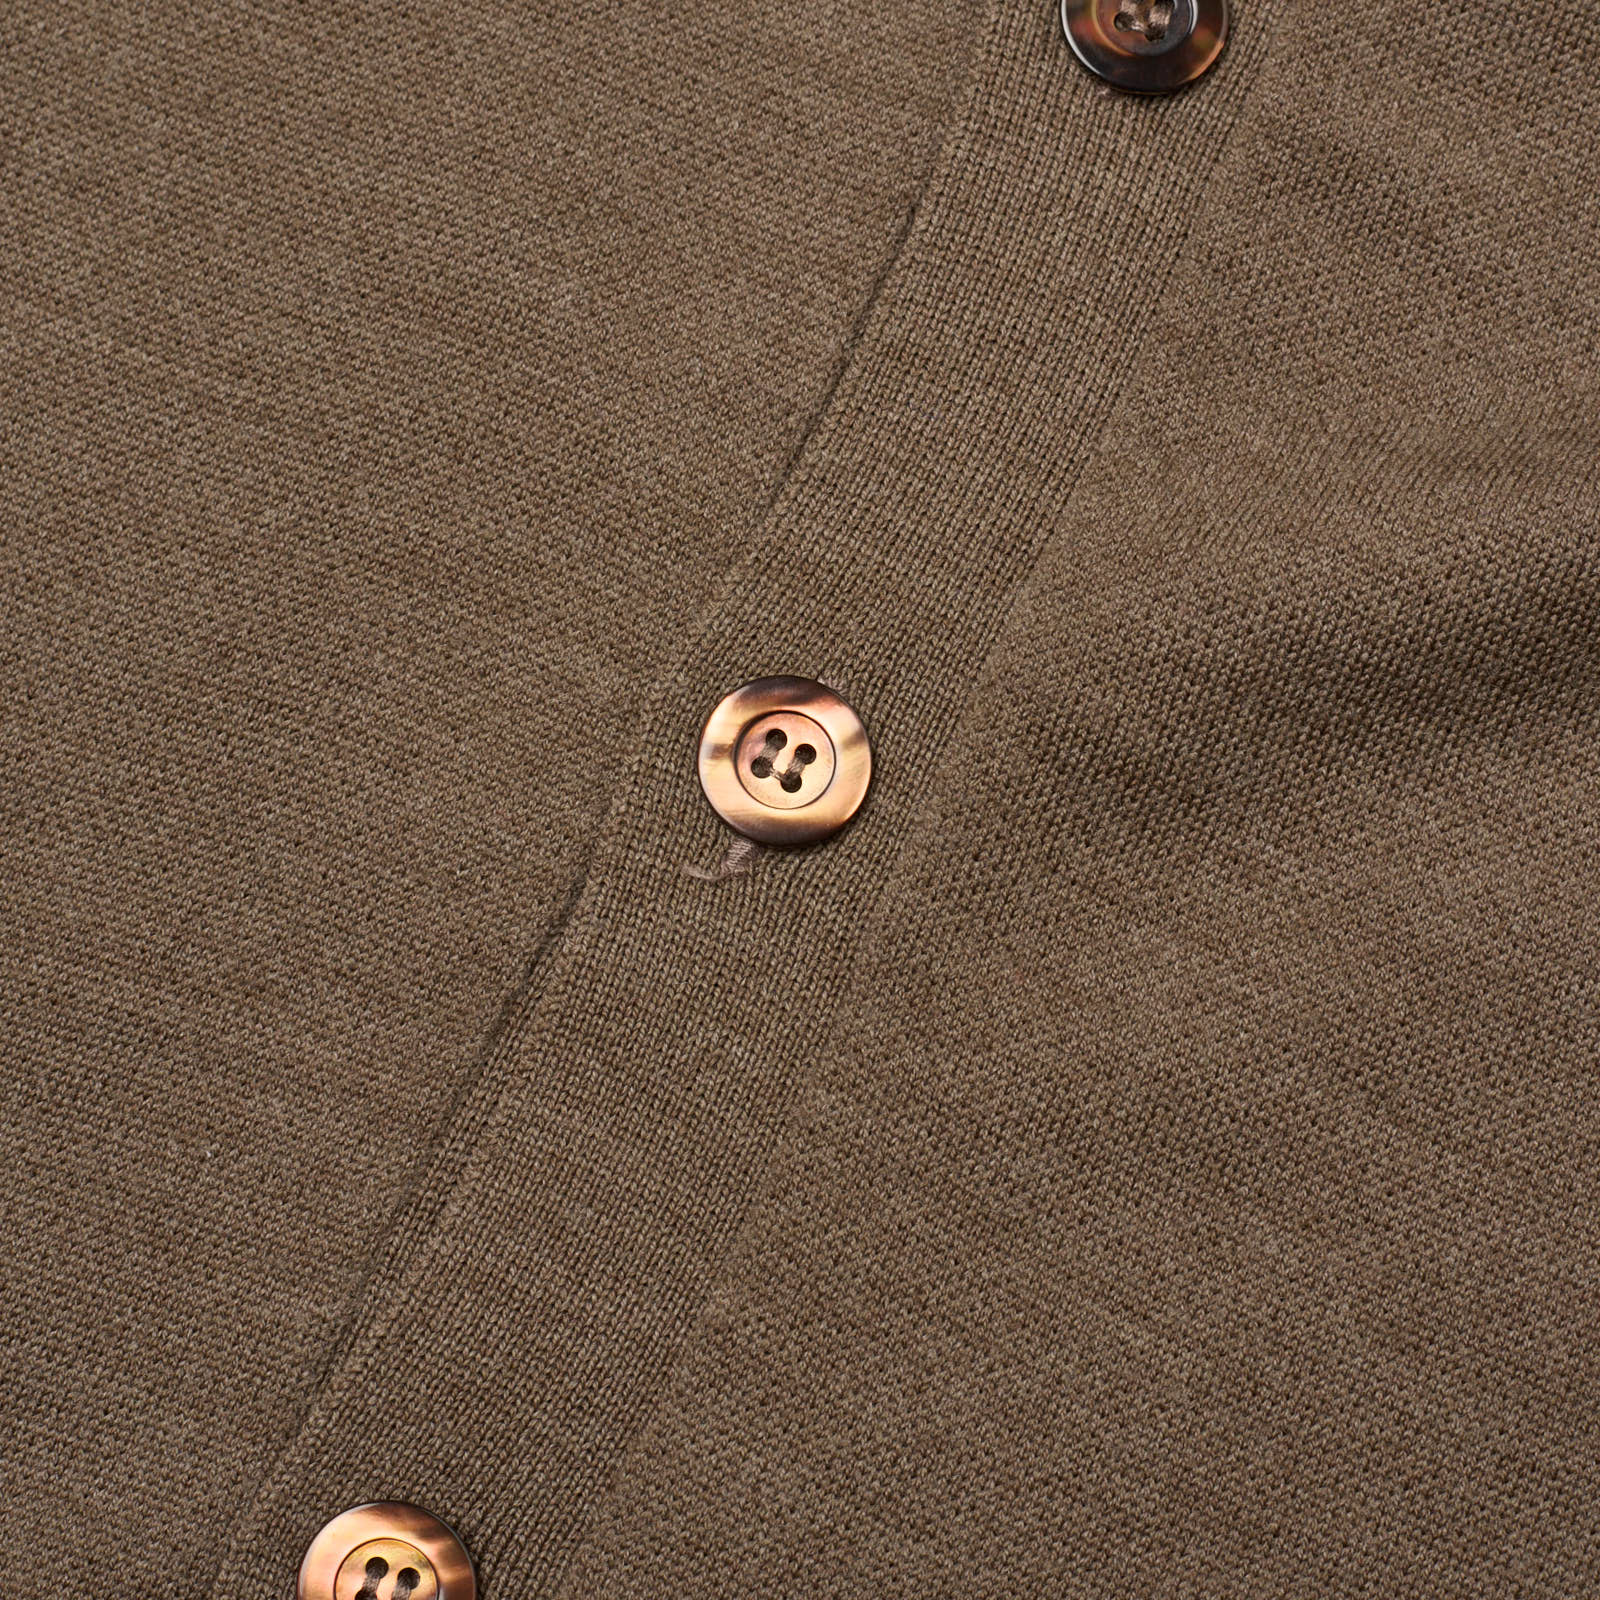 ONES Brown Loro Piana Merino Wool Super 160's Knit Cardigan Sweater EU 54 NEW US XL